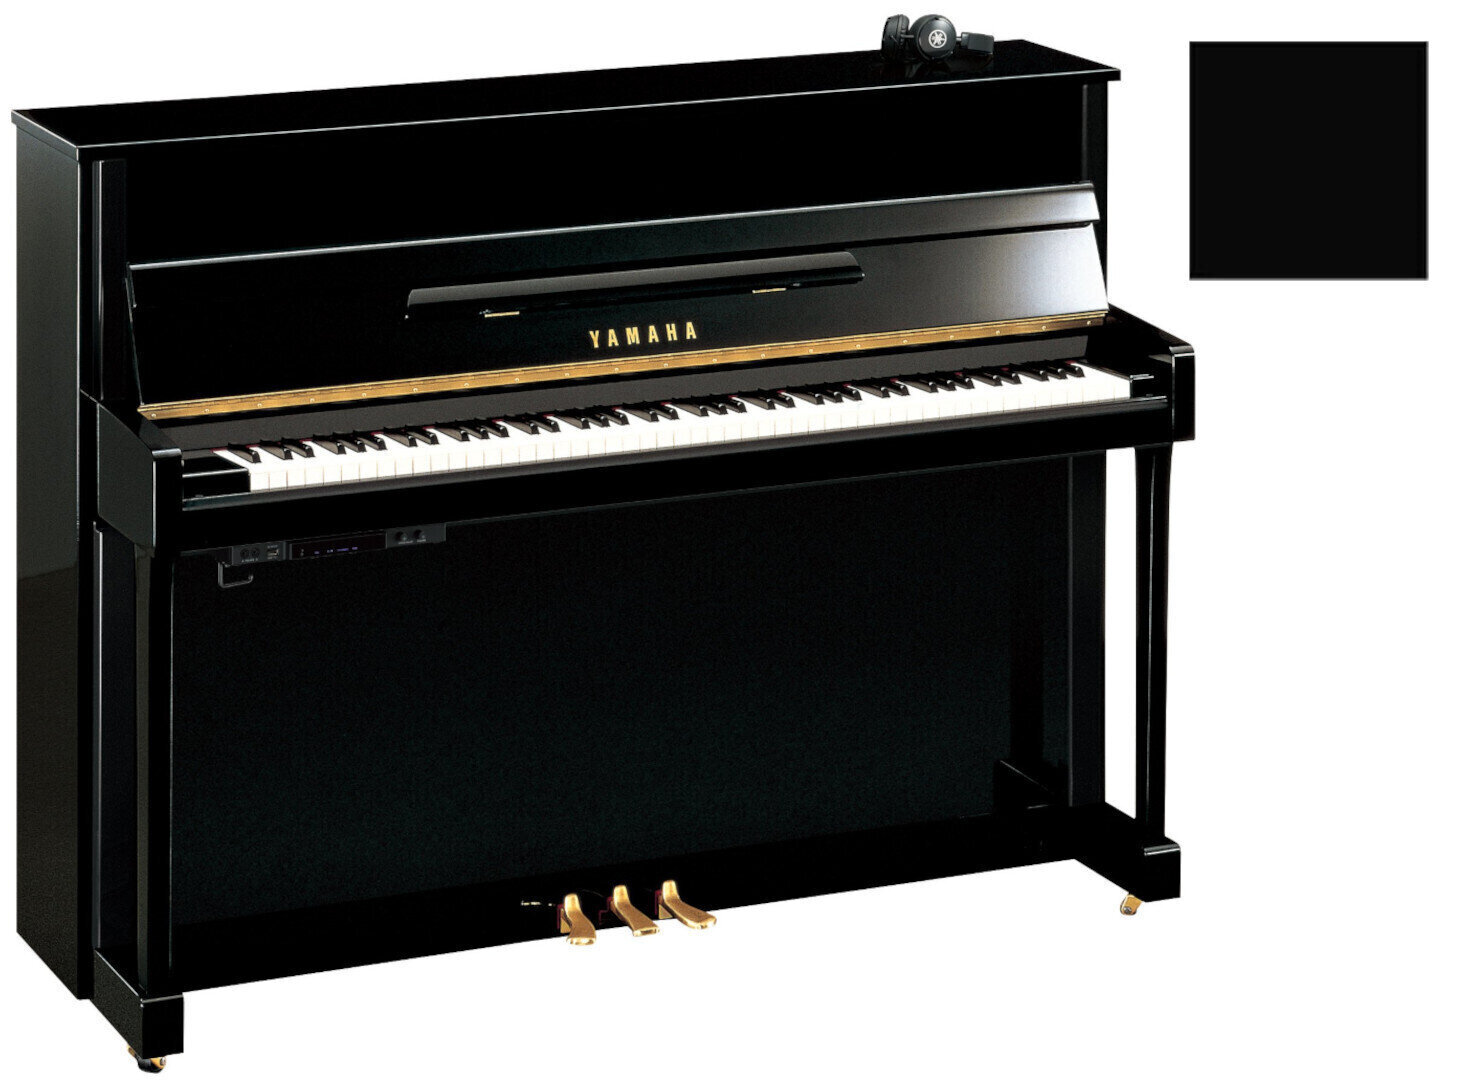 Piano Yamaha B2 SC2 Silent Piano Polished Ebony